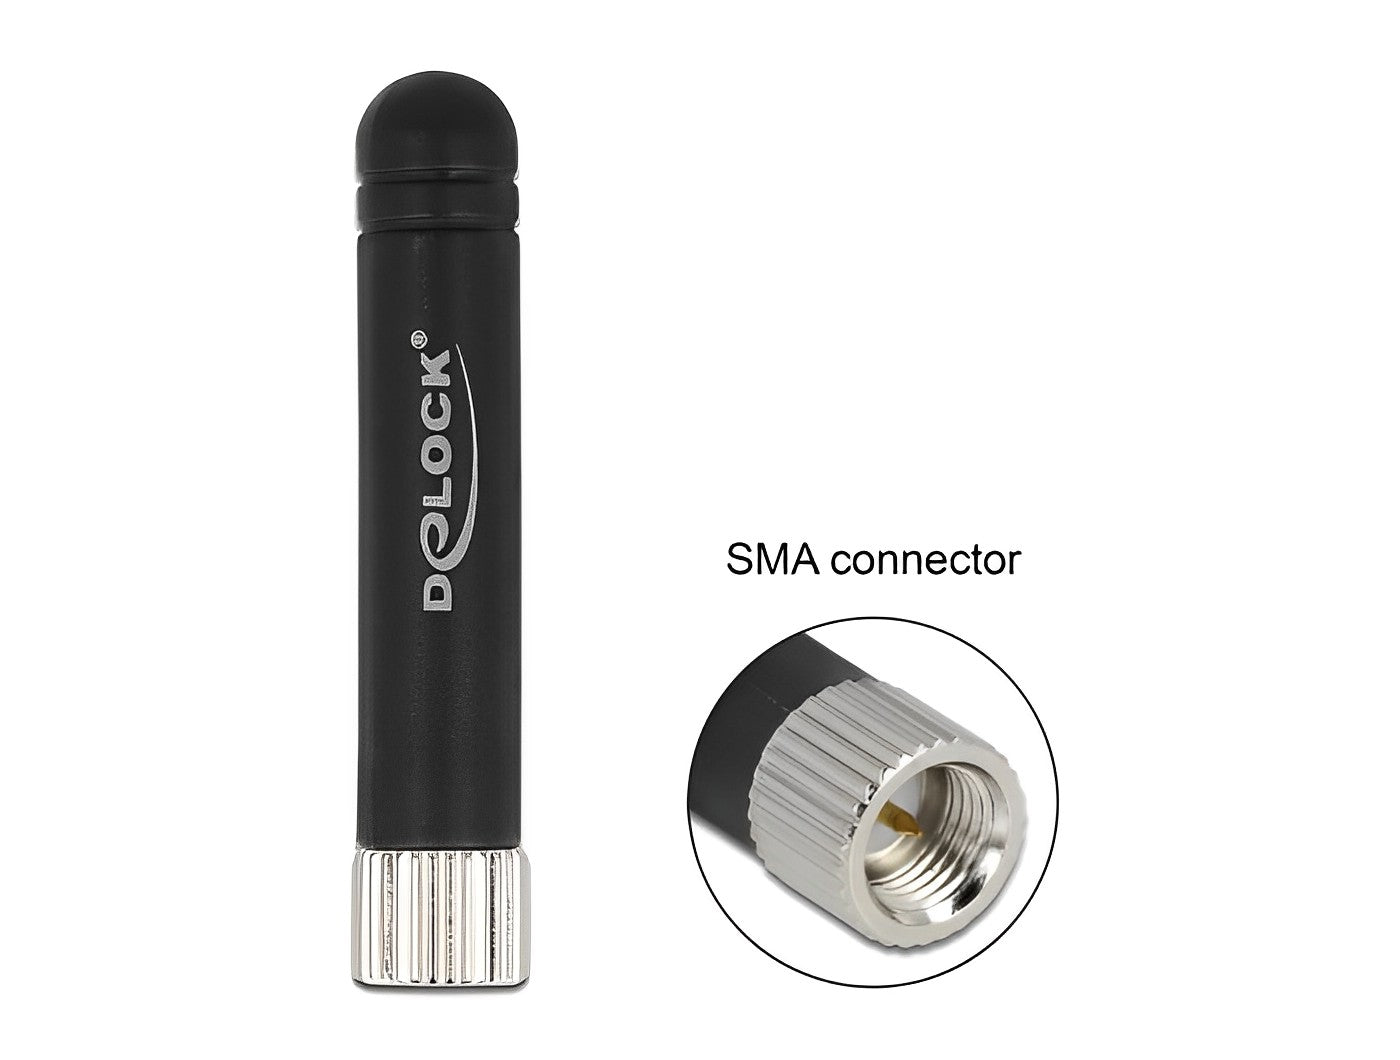 אנטנה גמישה כלל כיוונית ISM 433 MHz -0.5 dBi פנימית מחבר SMA plug - delock.israel